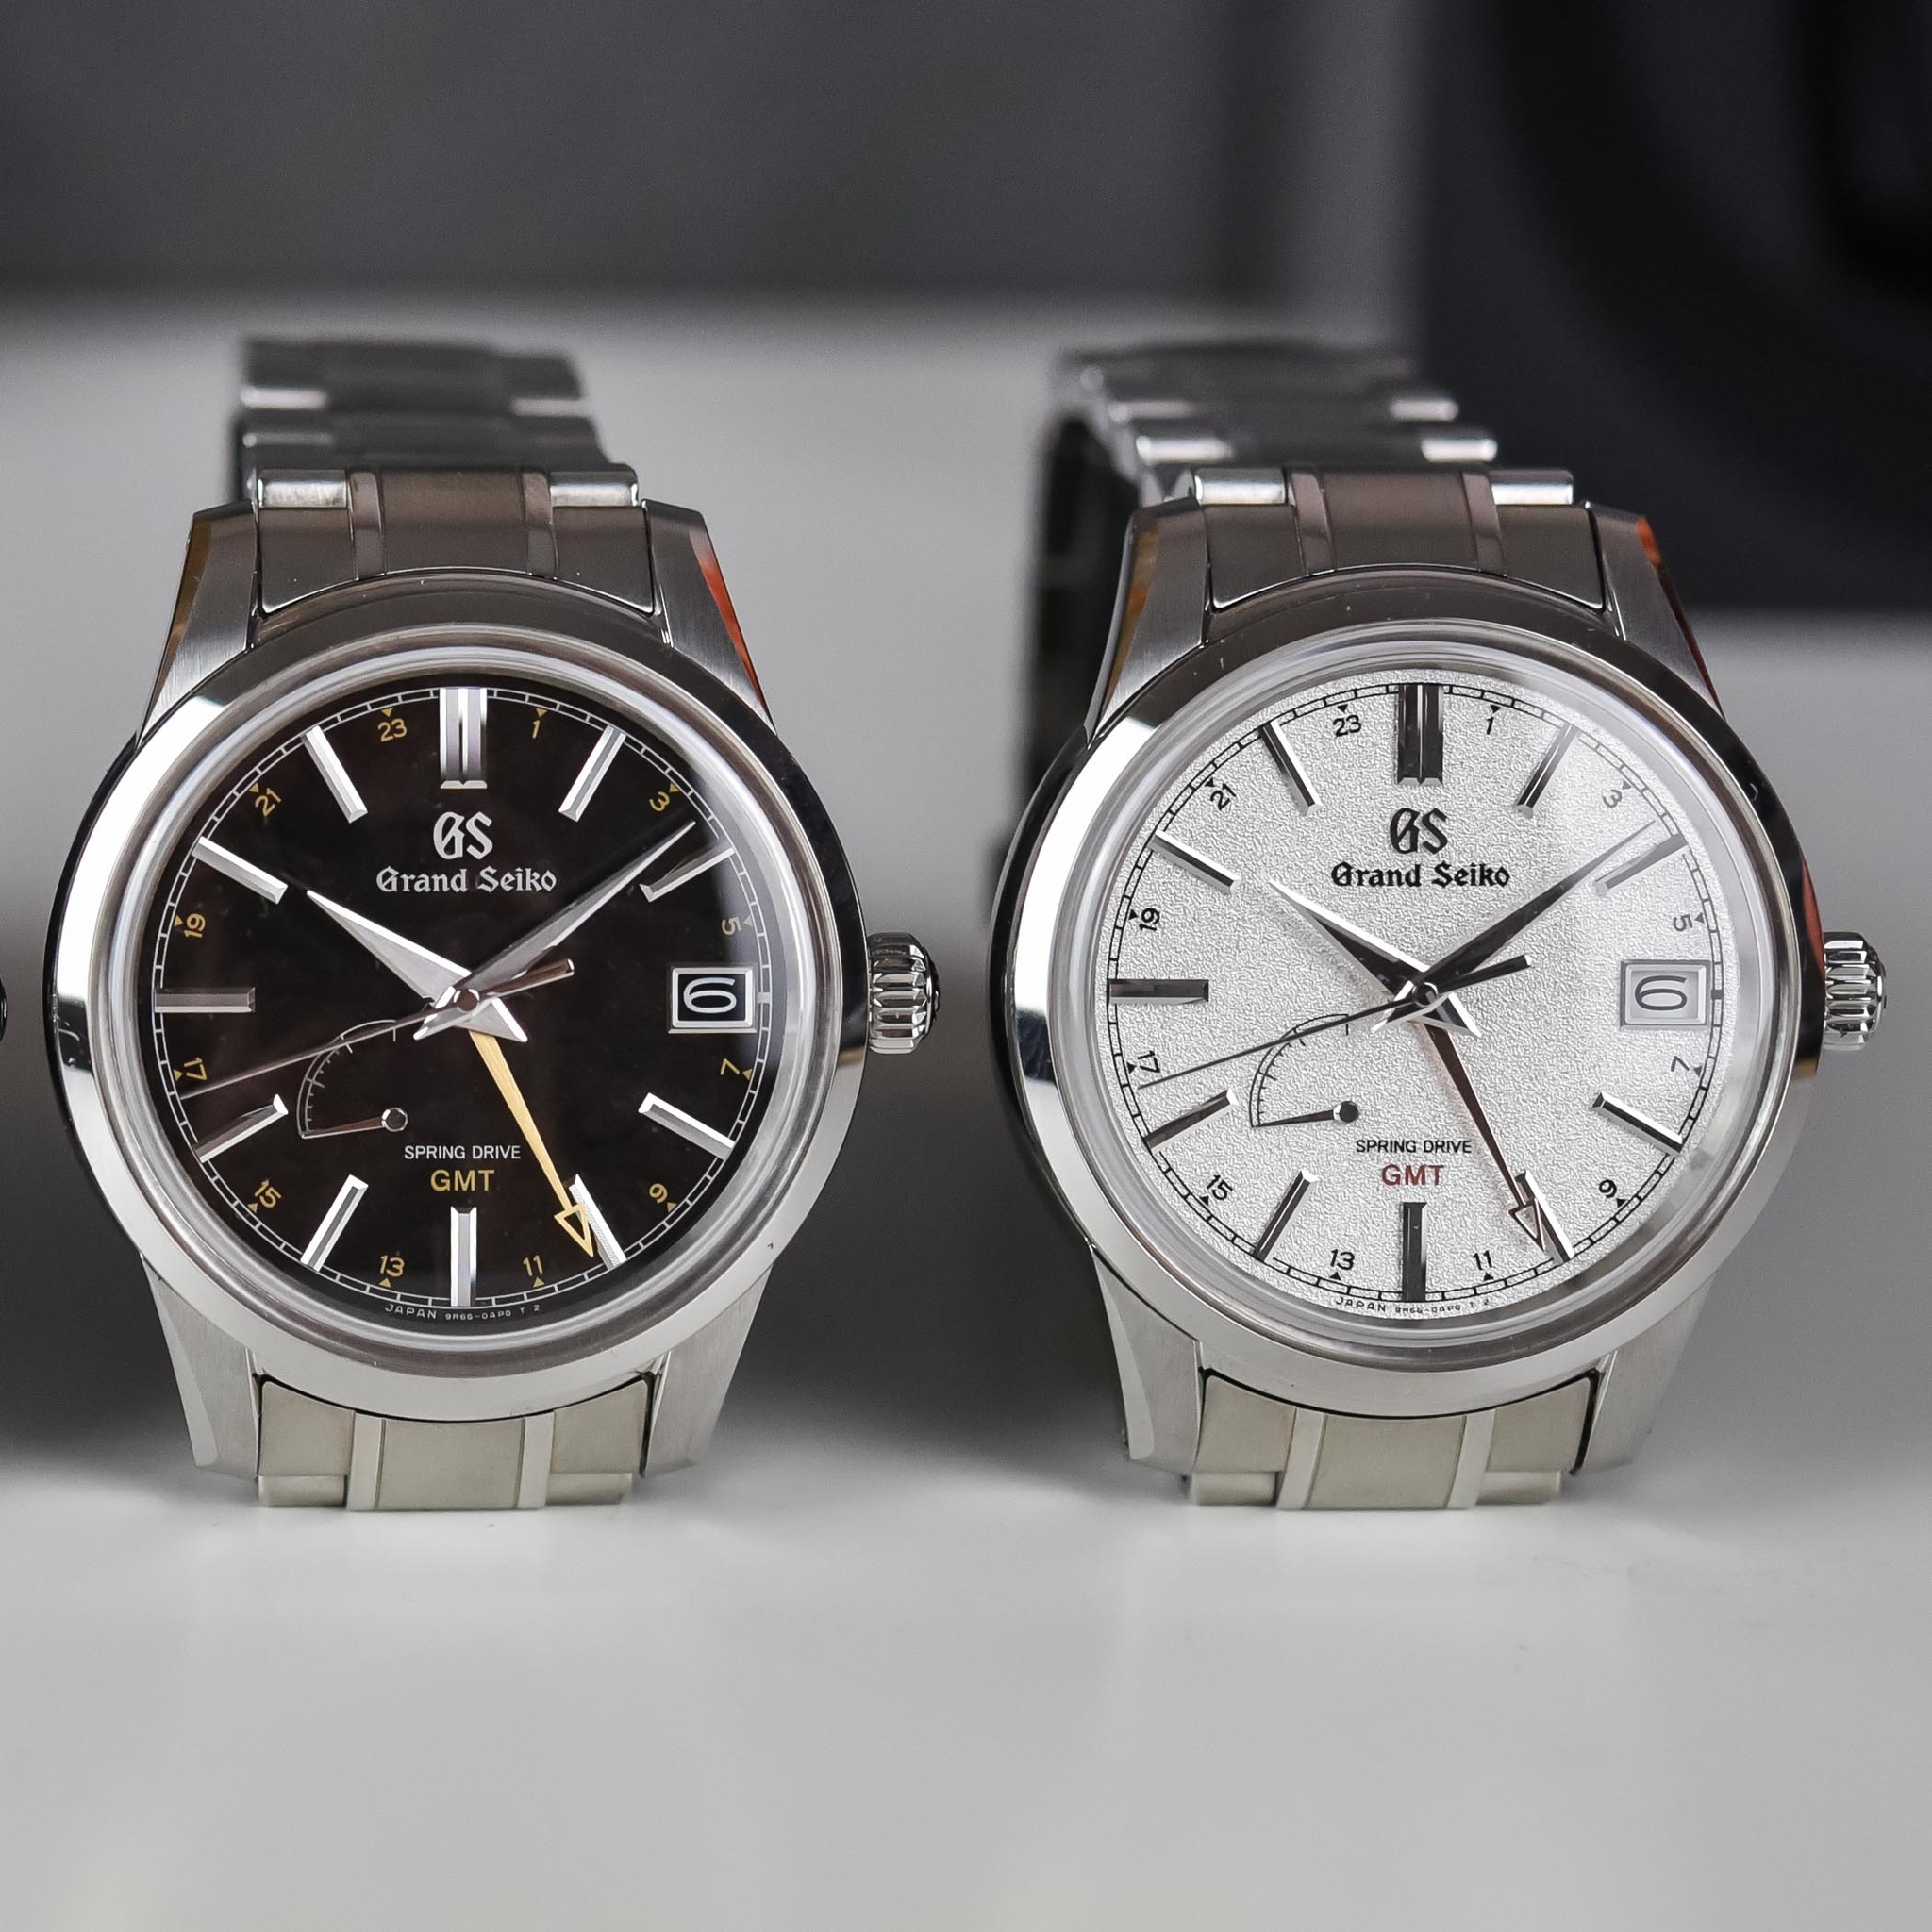 Thiên nhiên diệu kỳ trong đồng hồ mới của loạt thương hiệu cao cấp: có  Rolex, Hublot, Grand Seiko